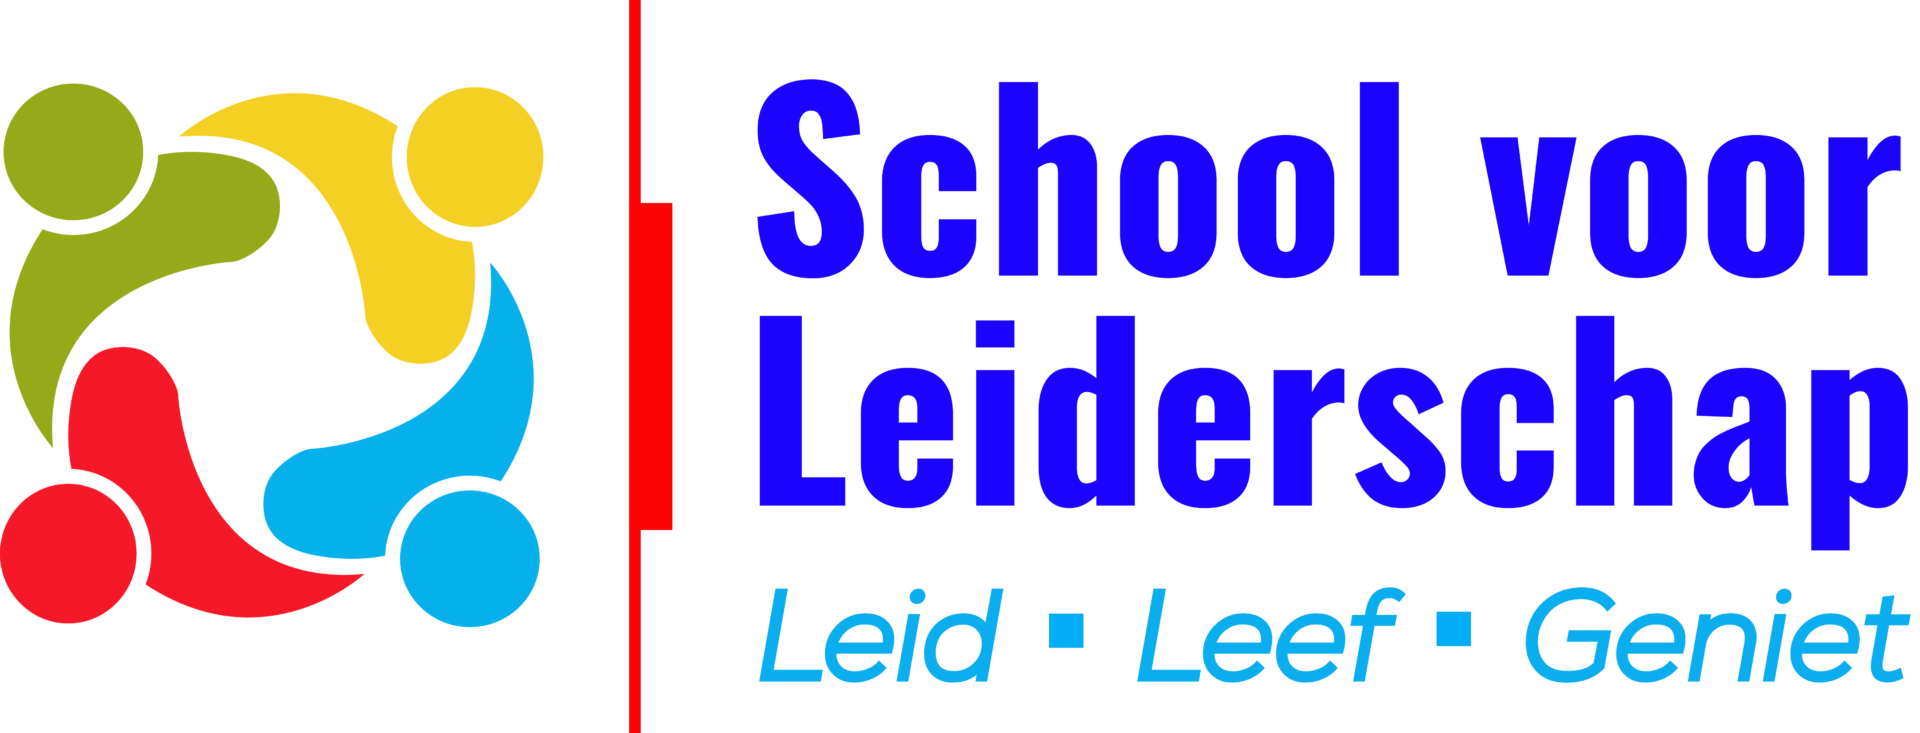 School voor Leiderschap - logo